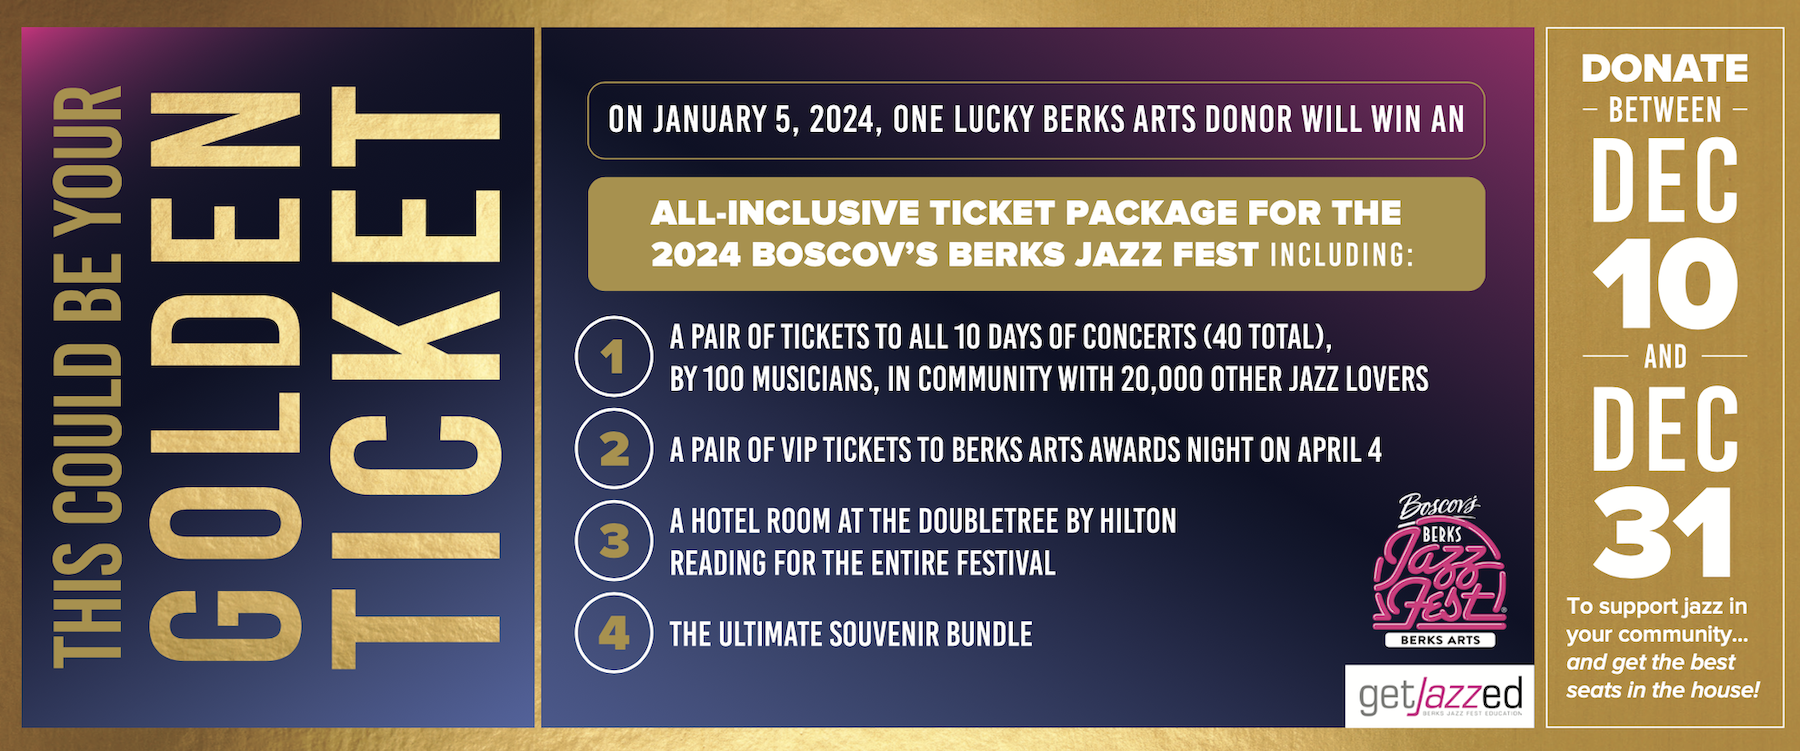 2024 Berks Jazz Fest Golden Ticket Matching Challenge Campaign